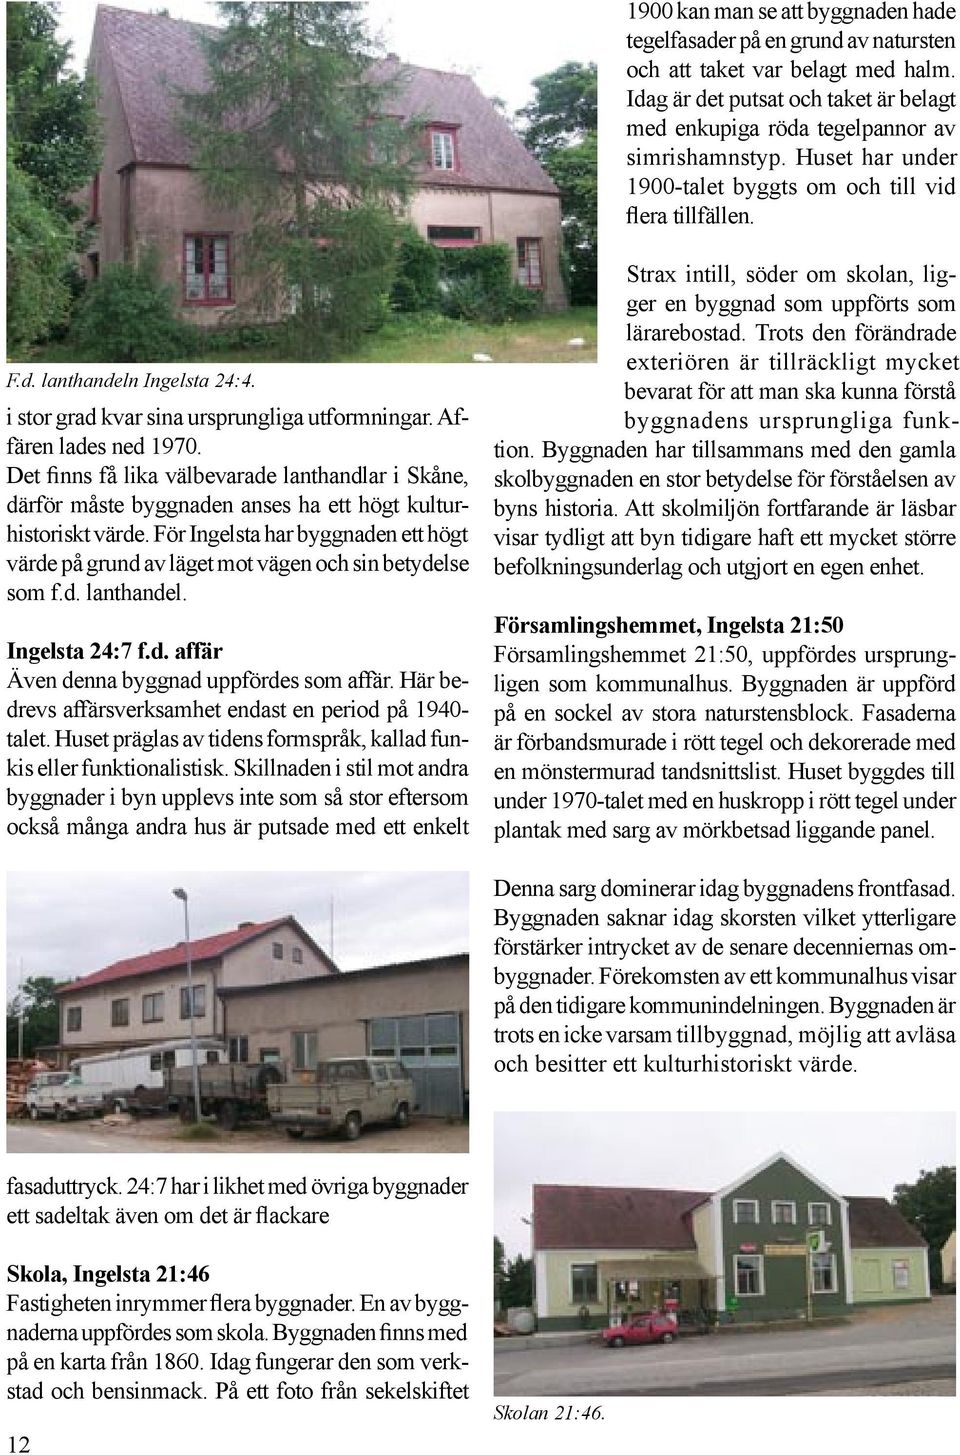 Det finns få lika välbevarade lanthandlar i Skåne, därför måste byggnaden anses ha ett högt kulturhistoriskt värde.